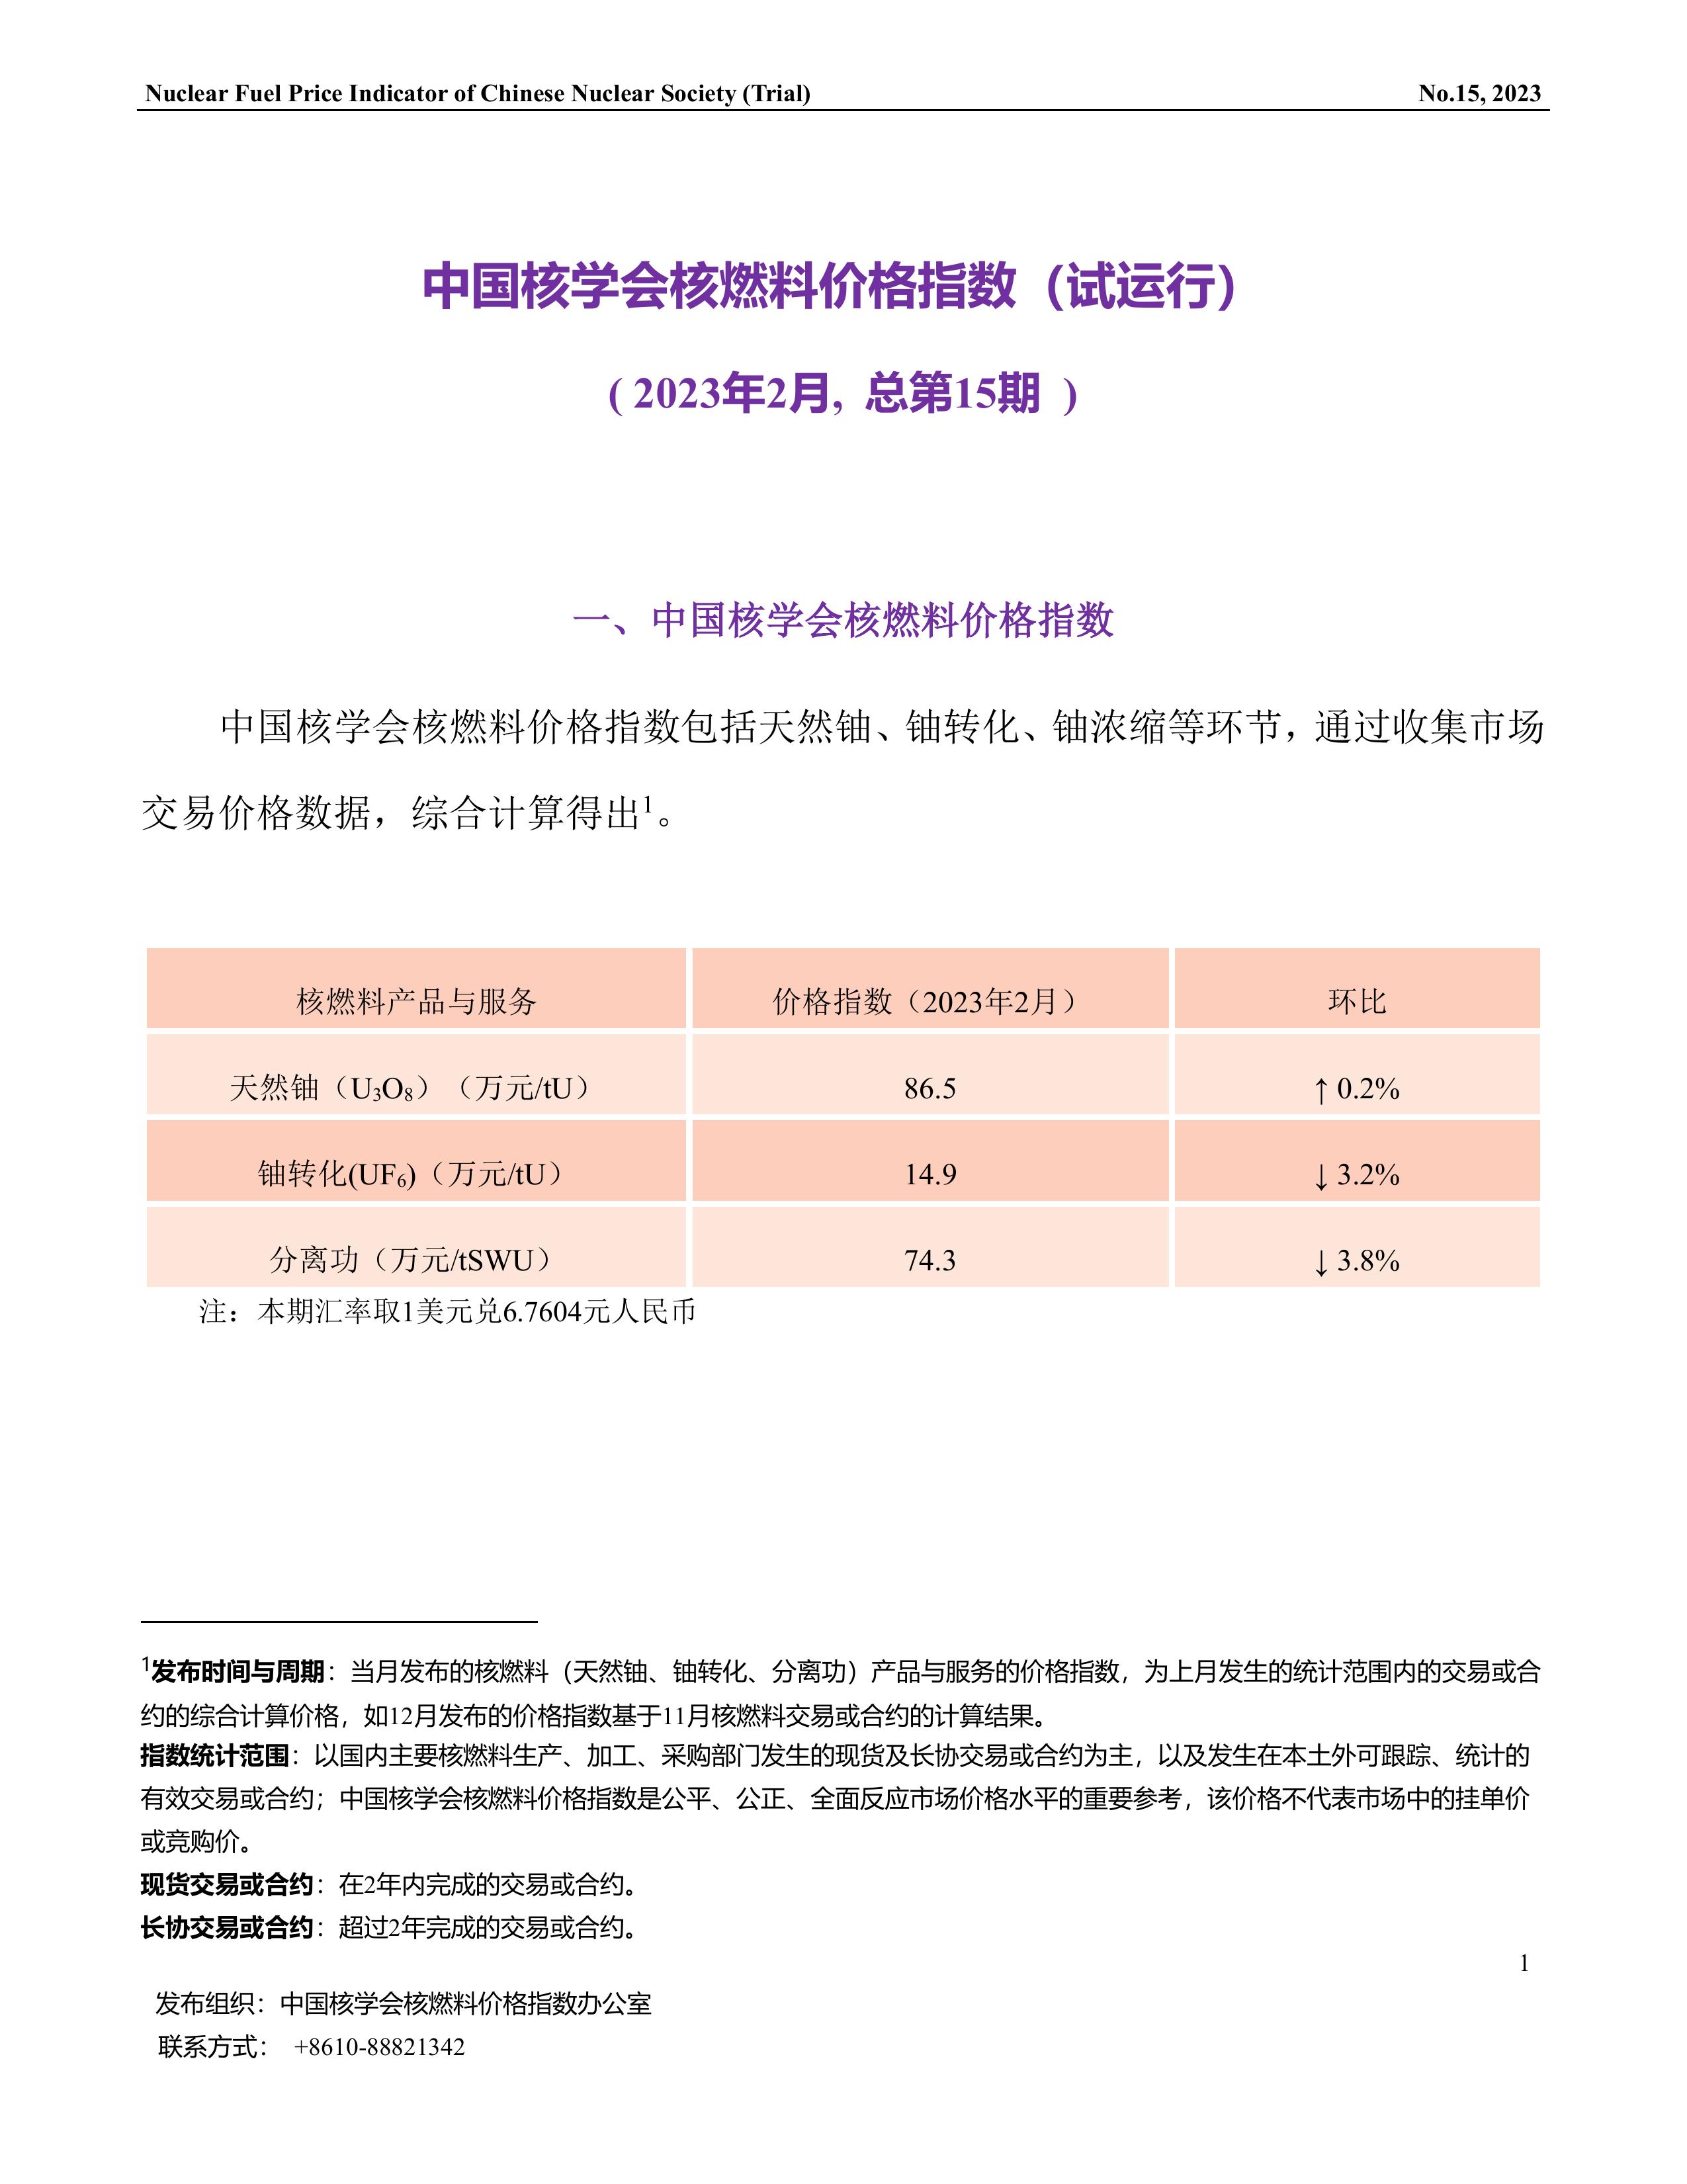 中国核学会核燃料价格指数(试运行)（2023年2月,总第15期）-终稿-1.jpg